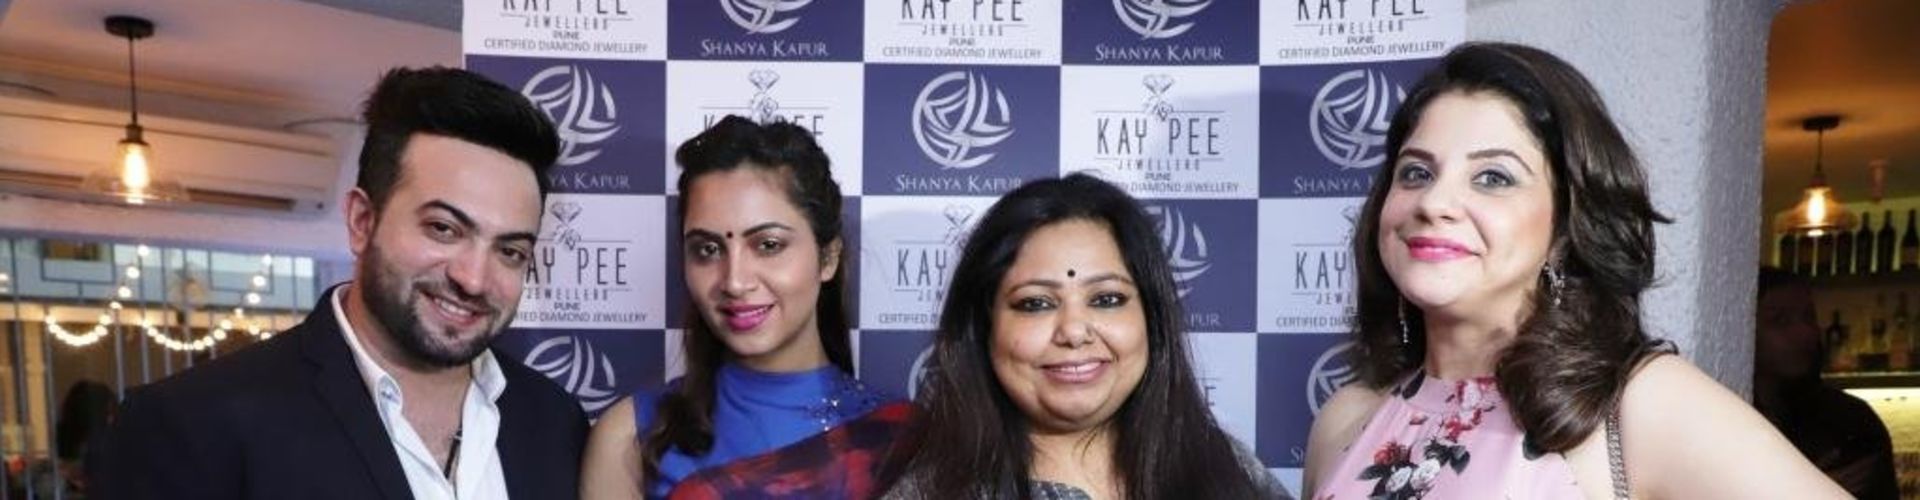 Celebrities Galore At Sonalli Guptaa’s Book Launch